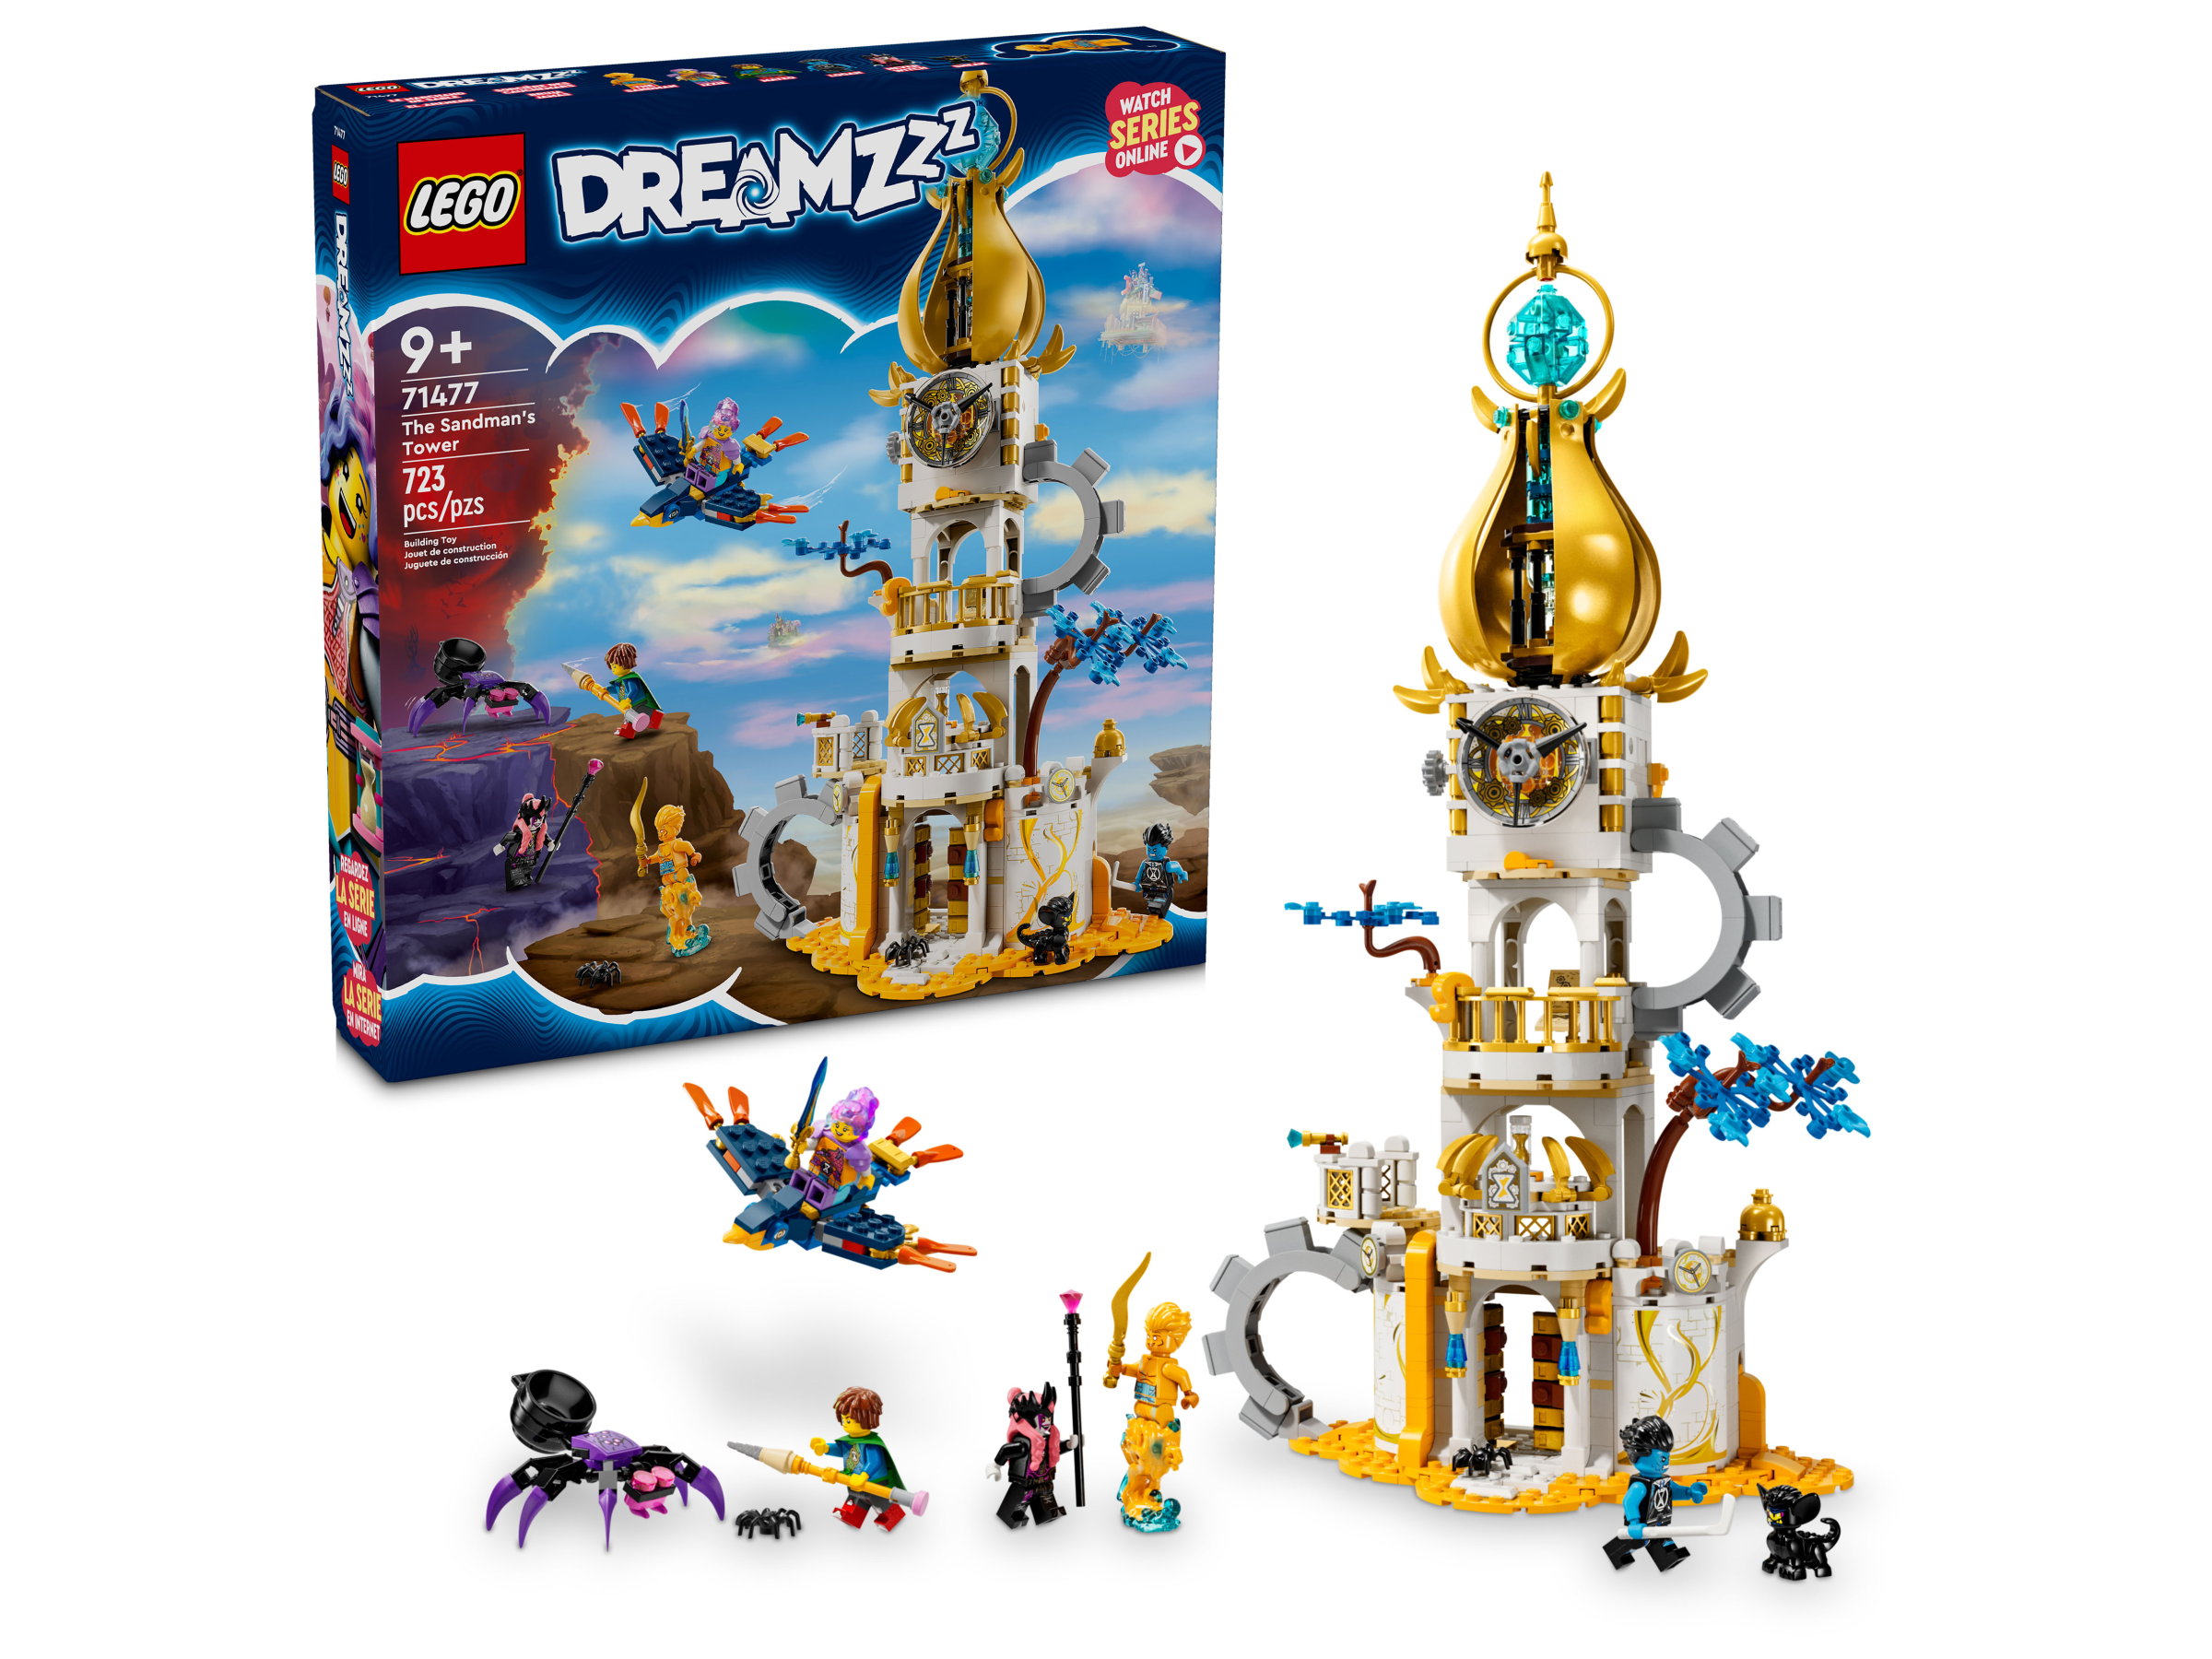 Dreamzzz (TV series), Lego dreamzzz Wiki